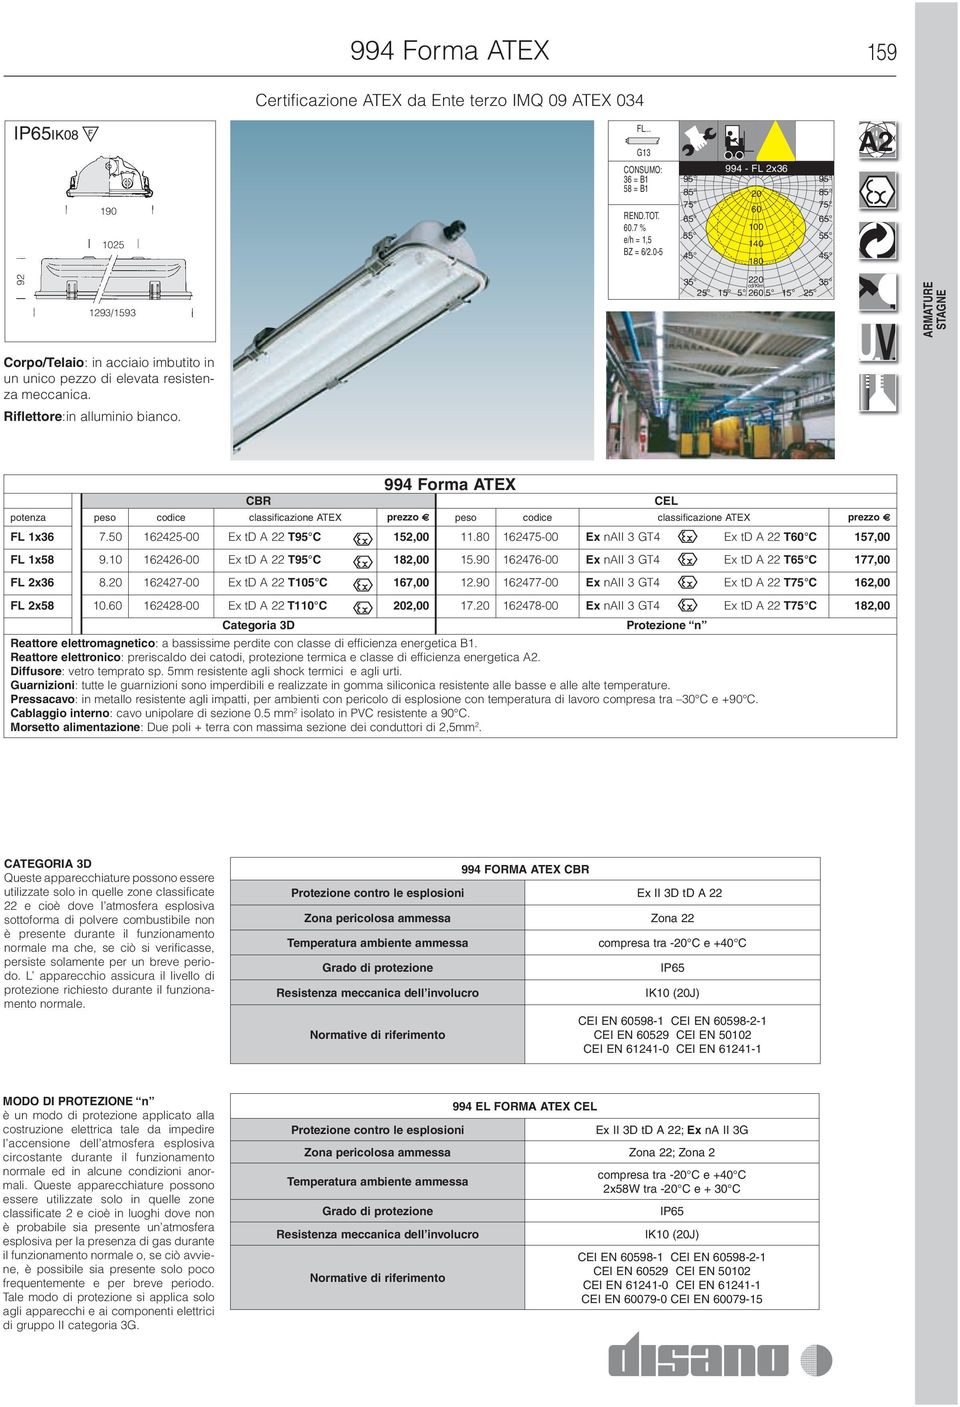 Riflettore:in alluminio bianco. CBR 994 Forma ATEX potenza peso codice classificazione ATEX prezzo peso codice classificazione ATEX prezzo FL 1x36 7.50 162425-00 Ex td A 22 TC 152,00 11.